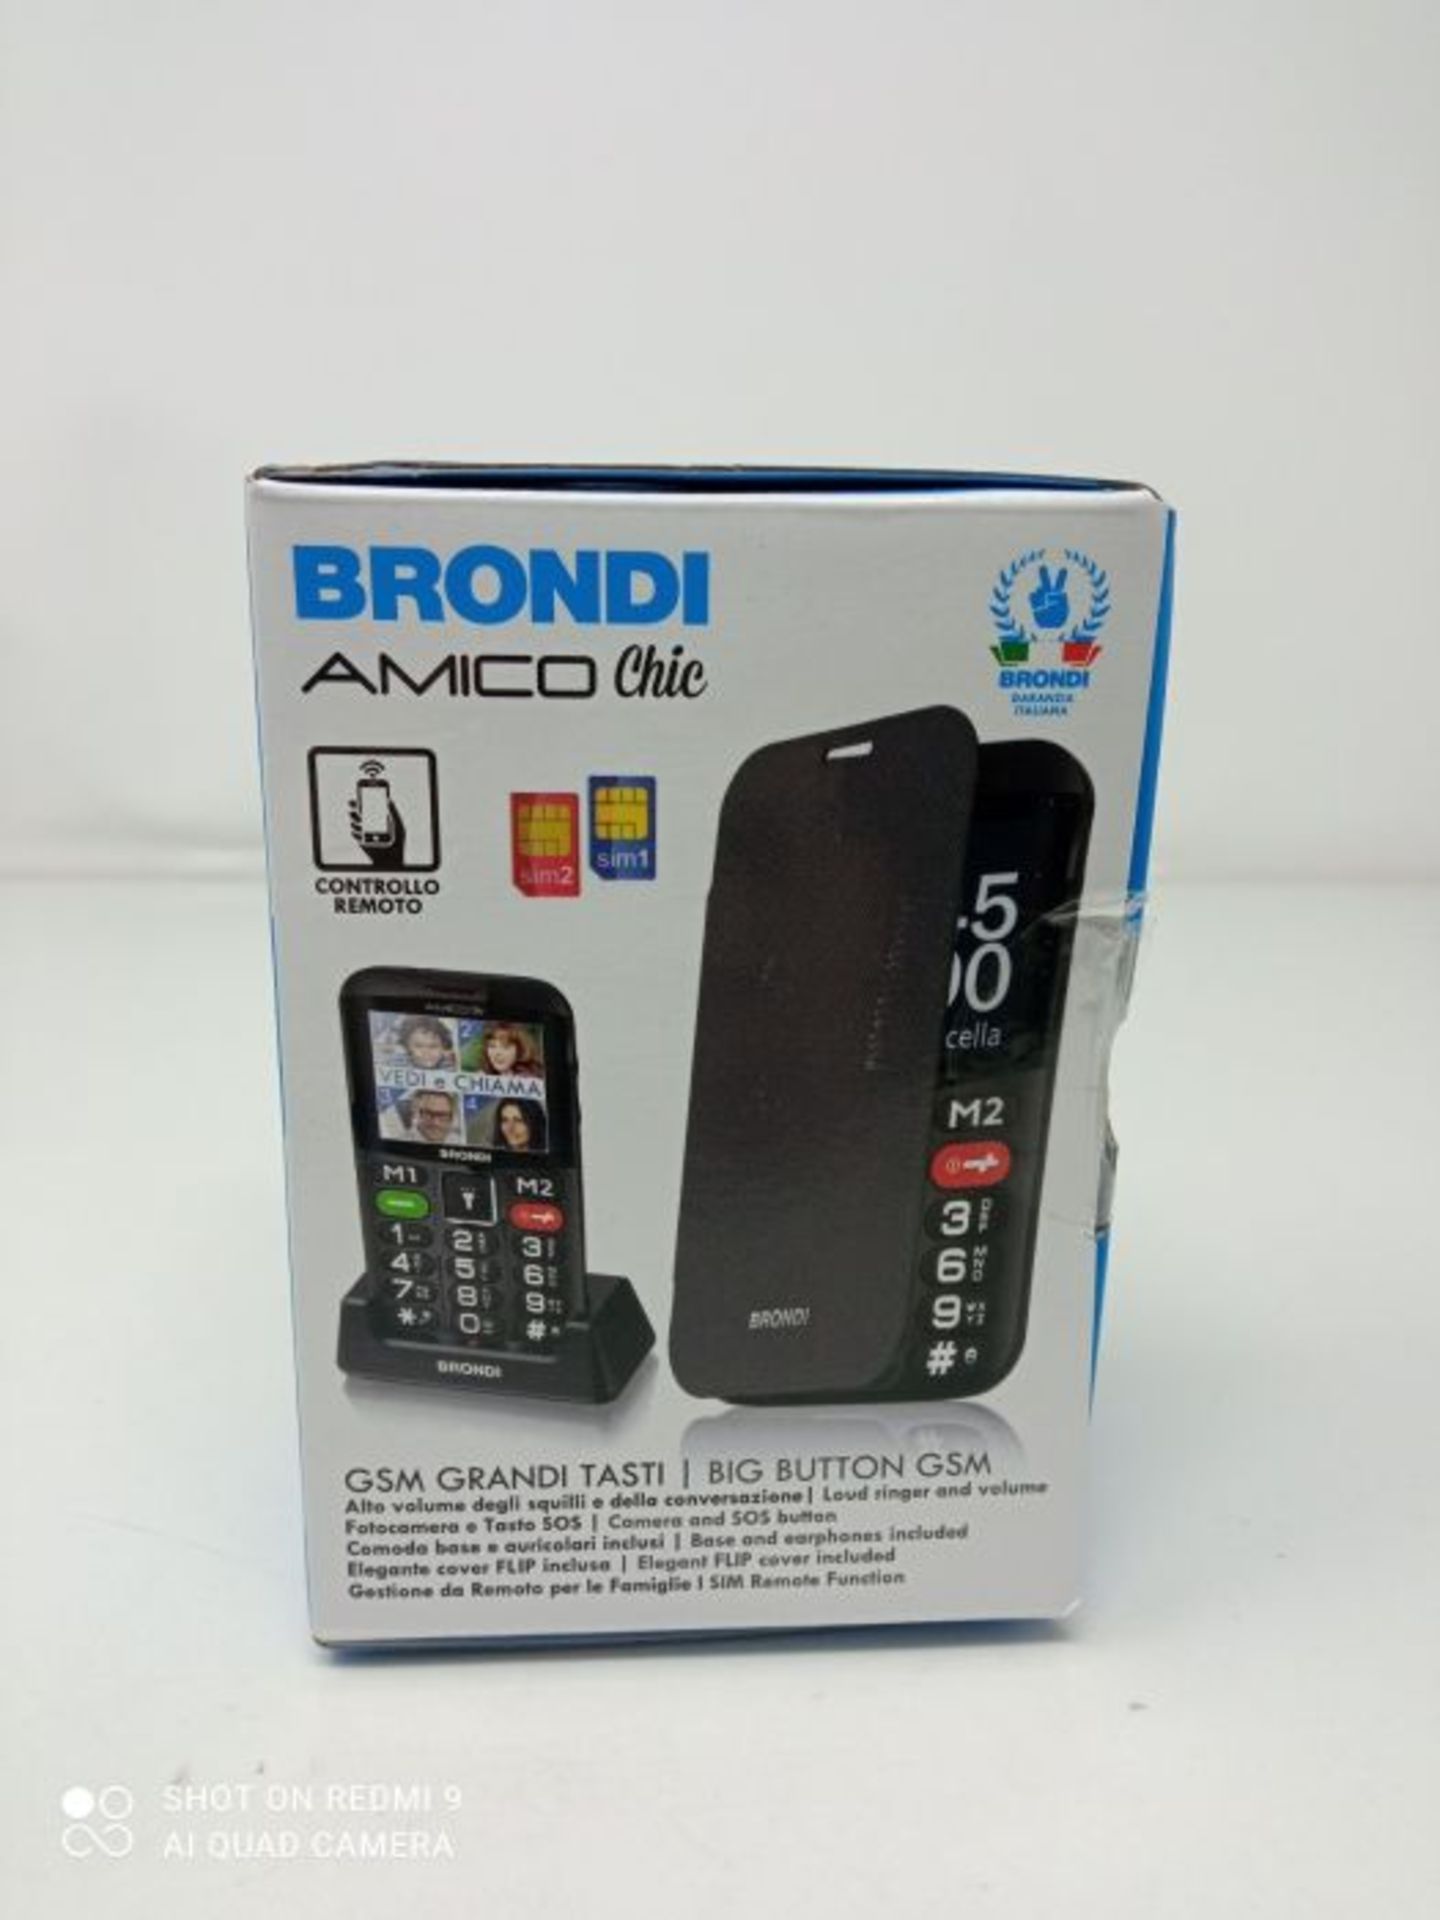 RRP £50.00 Brondi Amico Chic, Telefono cellulare GSM per anziani con tasti grandi, tasto SOS e fu - Image 2 of 3